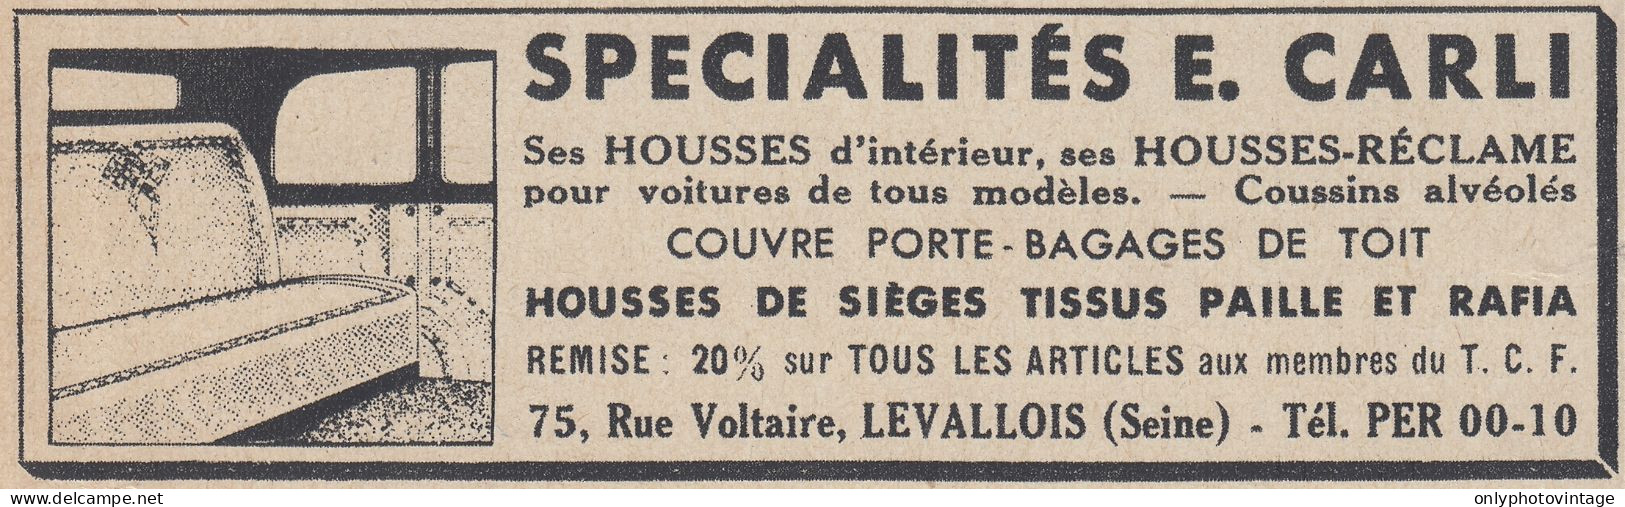 Sp�cialistes E. Carli - Levallois - 1938 Vintage Advertising - Pubblicit� - Werbung